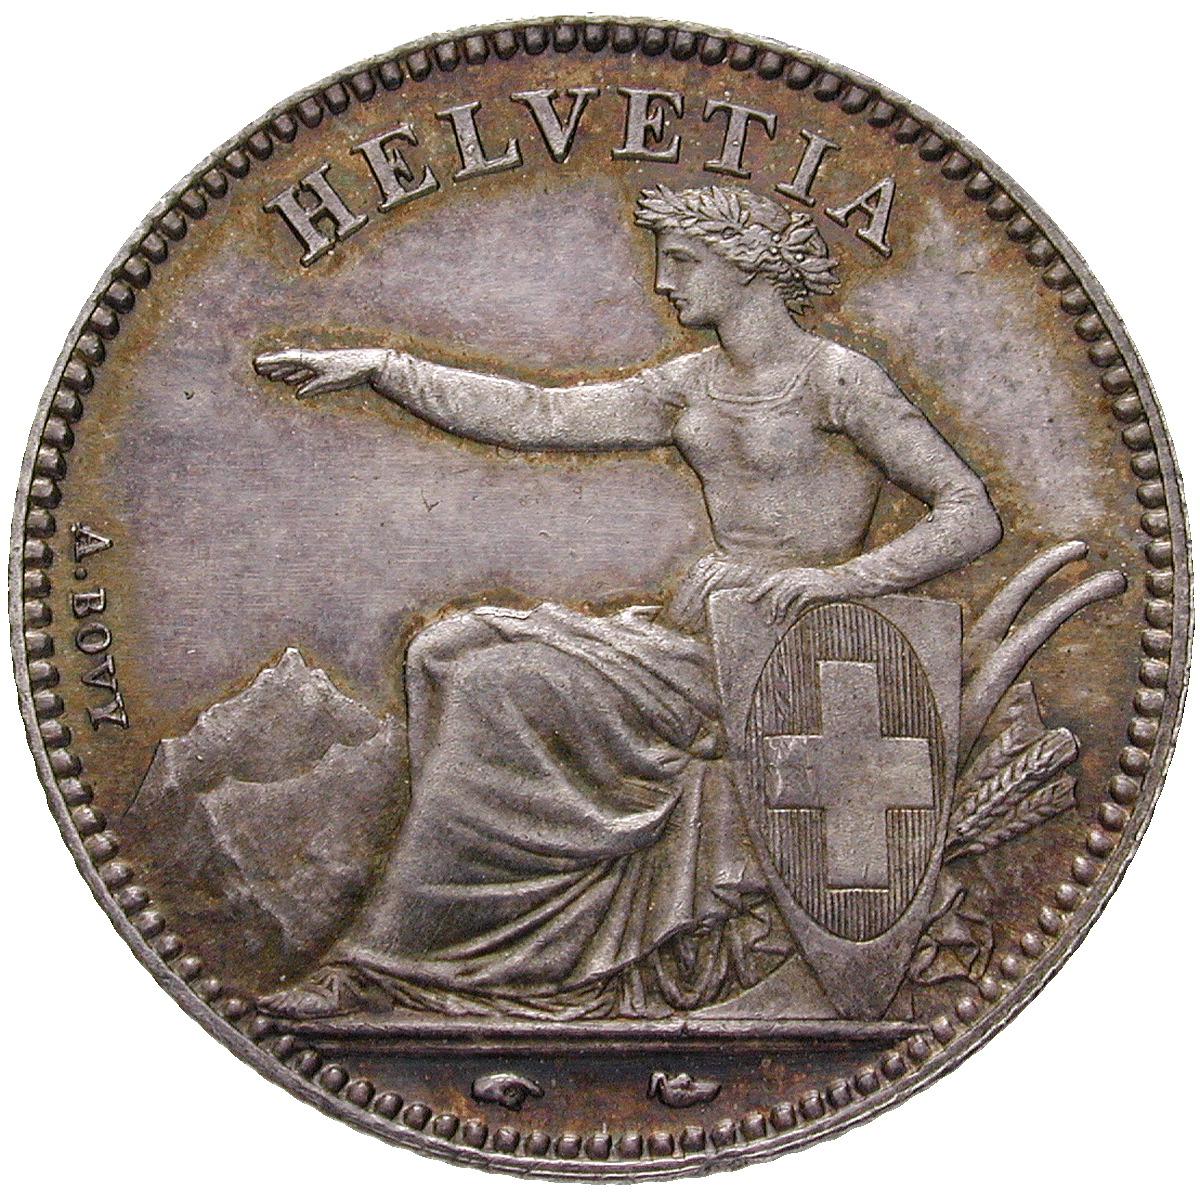 Schweizerische Eidgenossenschaft, 1 Franken 1850 (obverse)